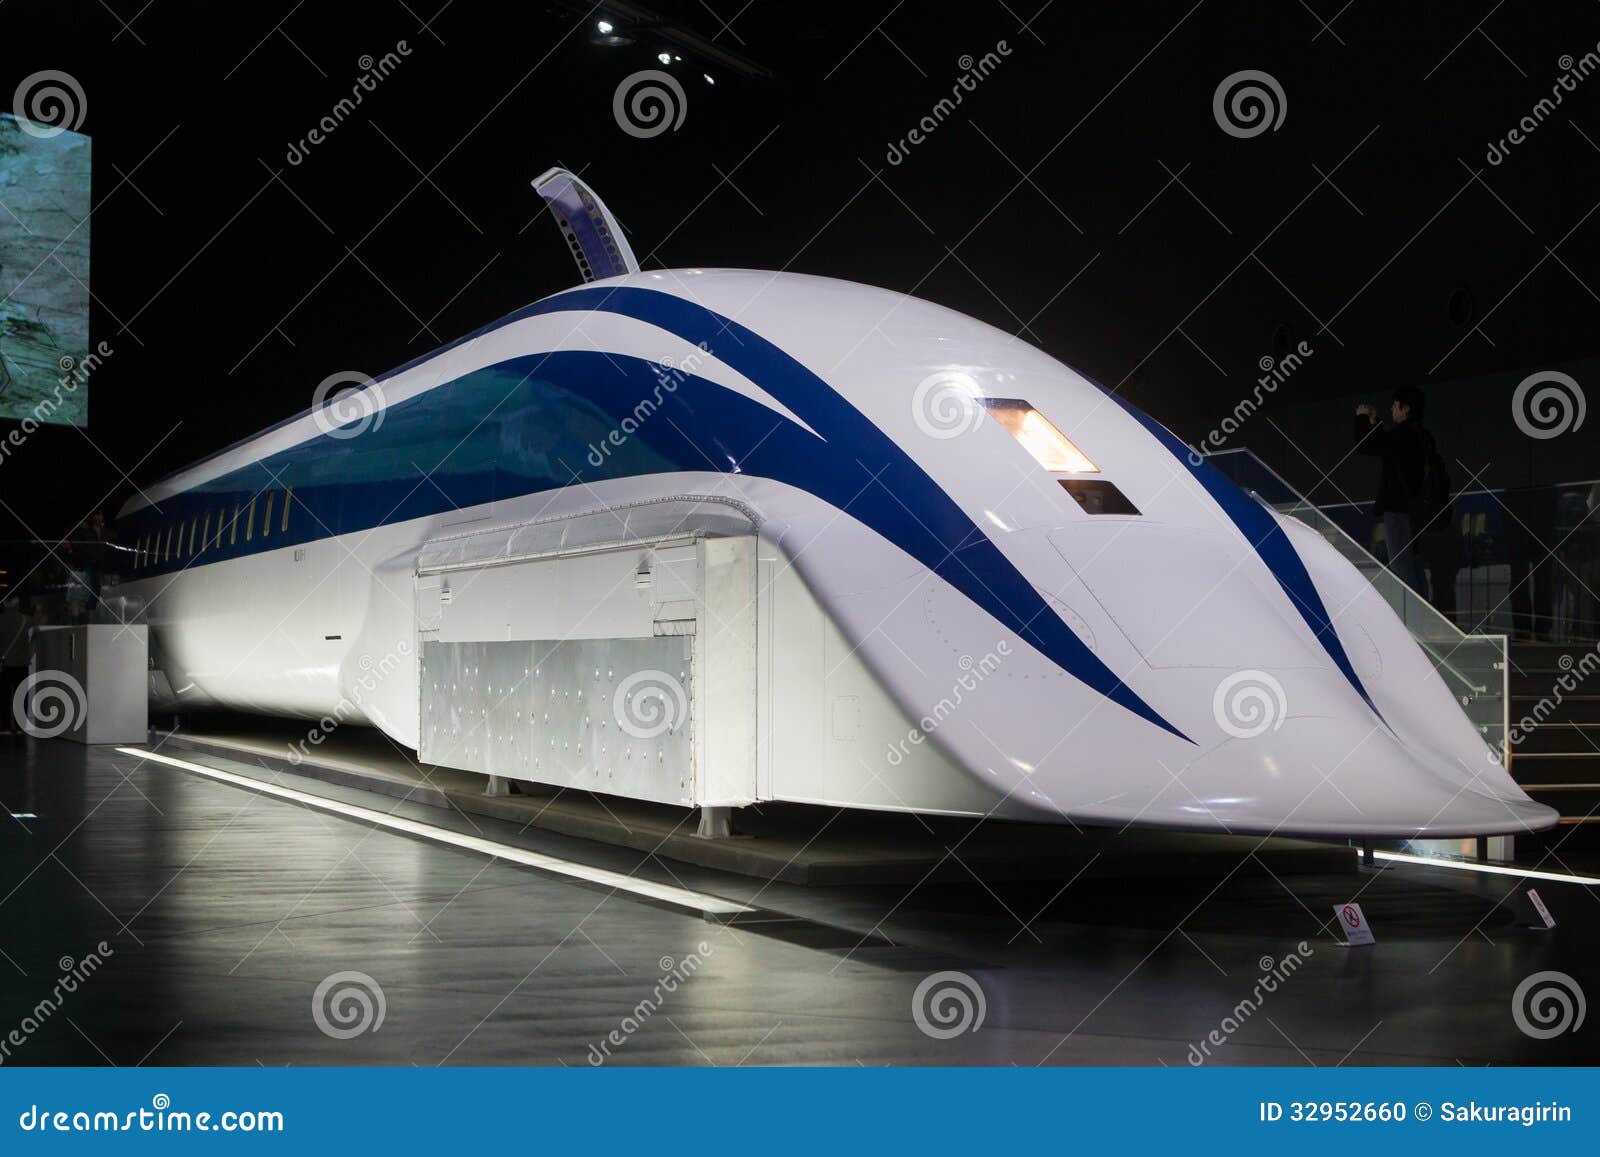 Maglev Designs Jrmaglev mlx01-1 train in